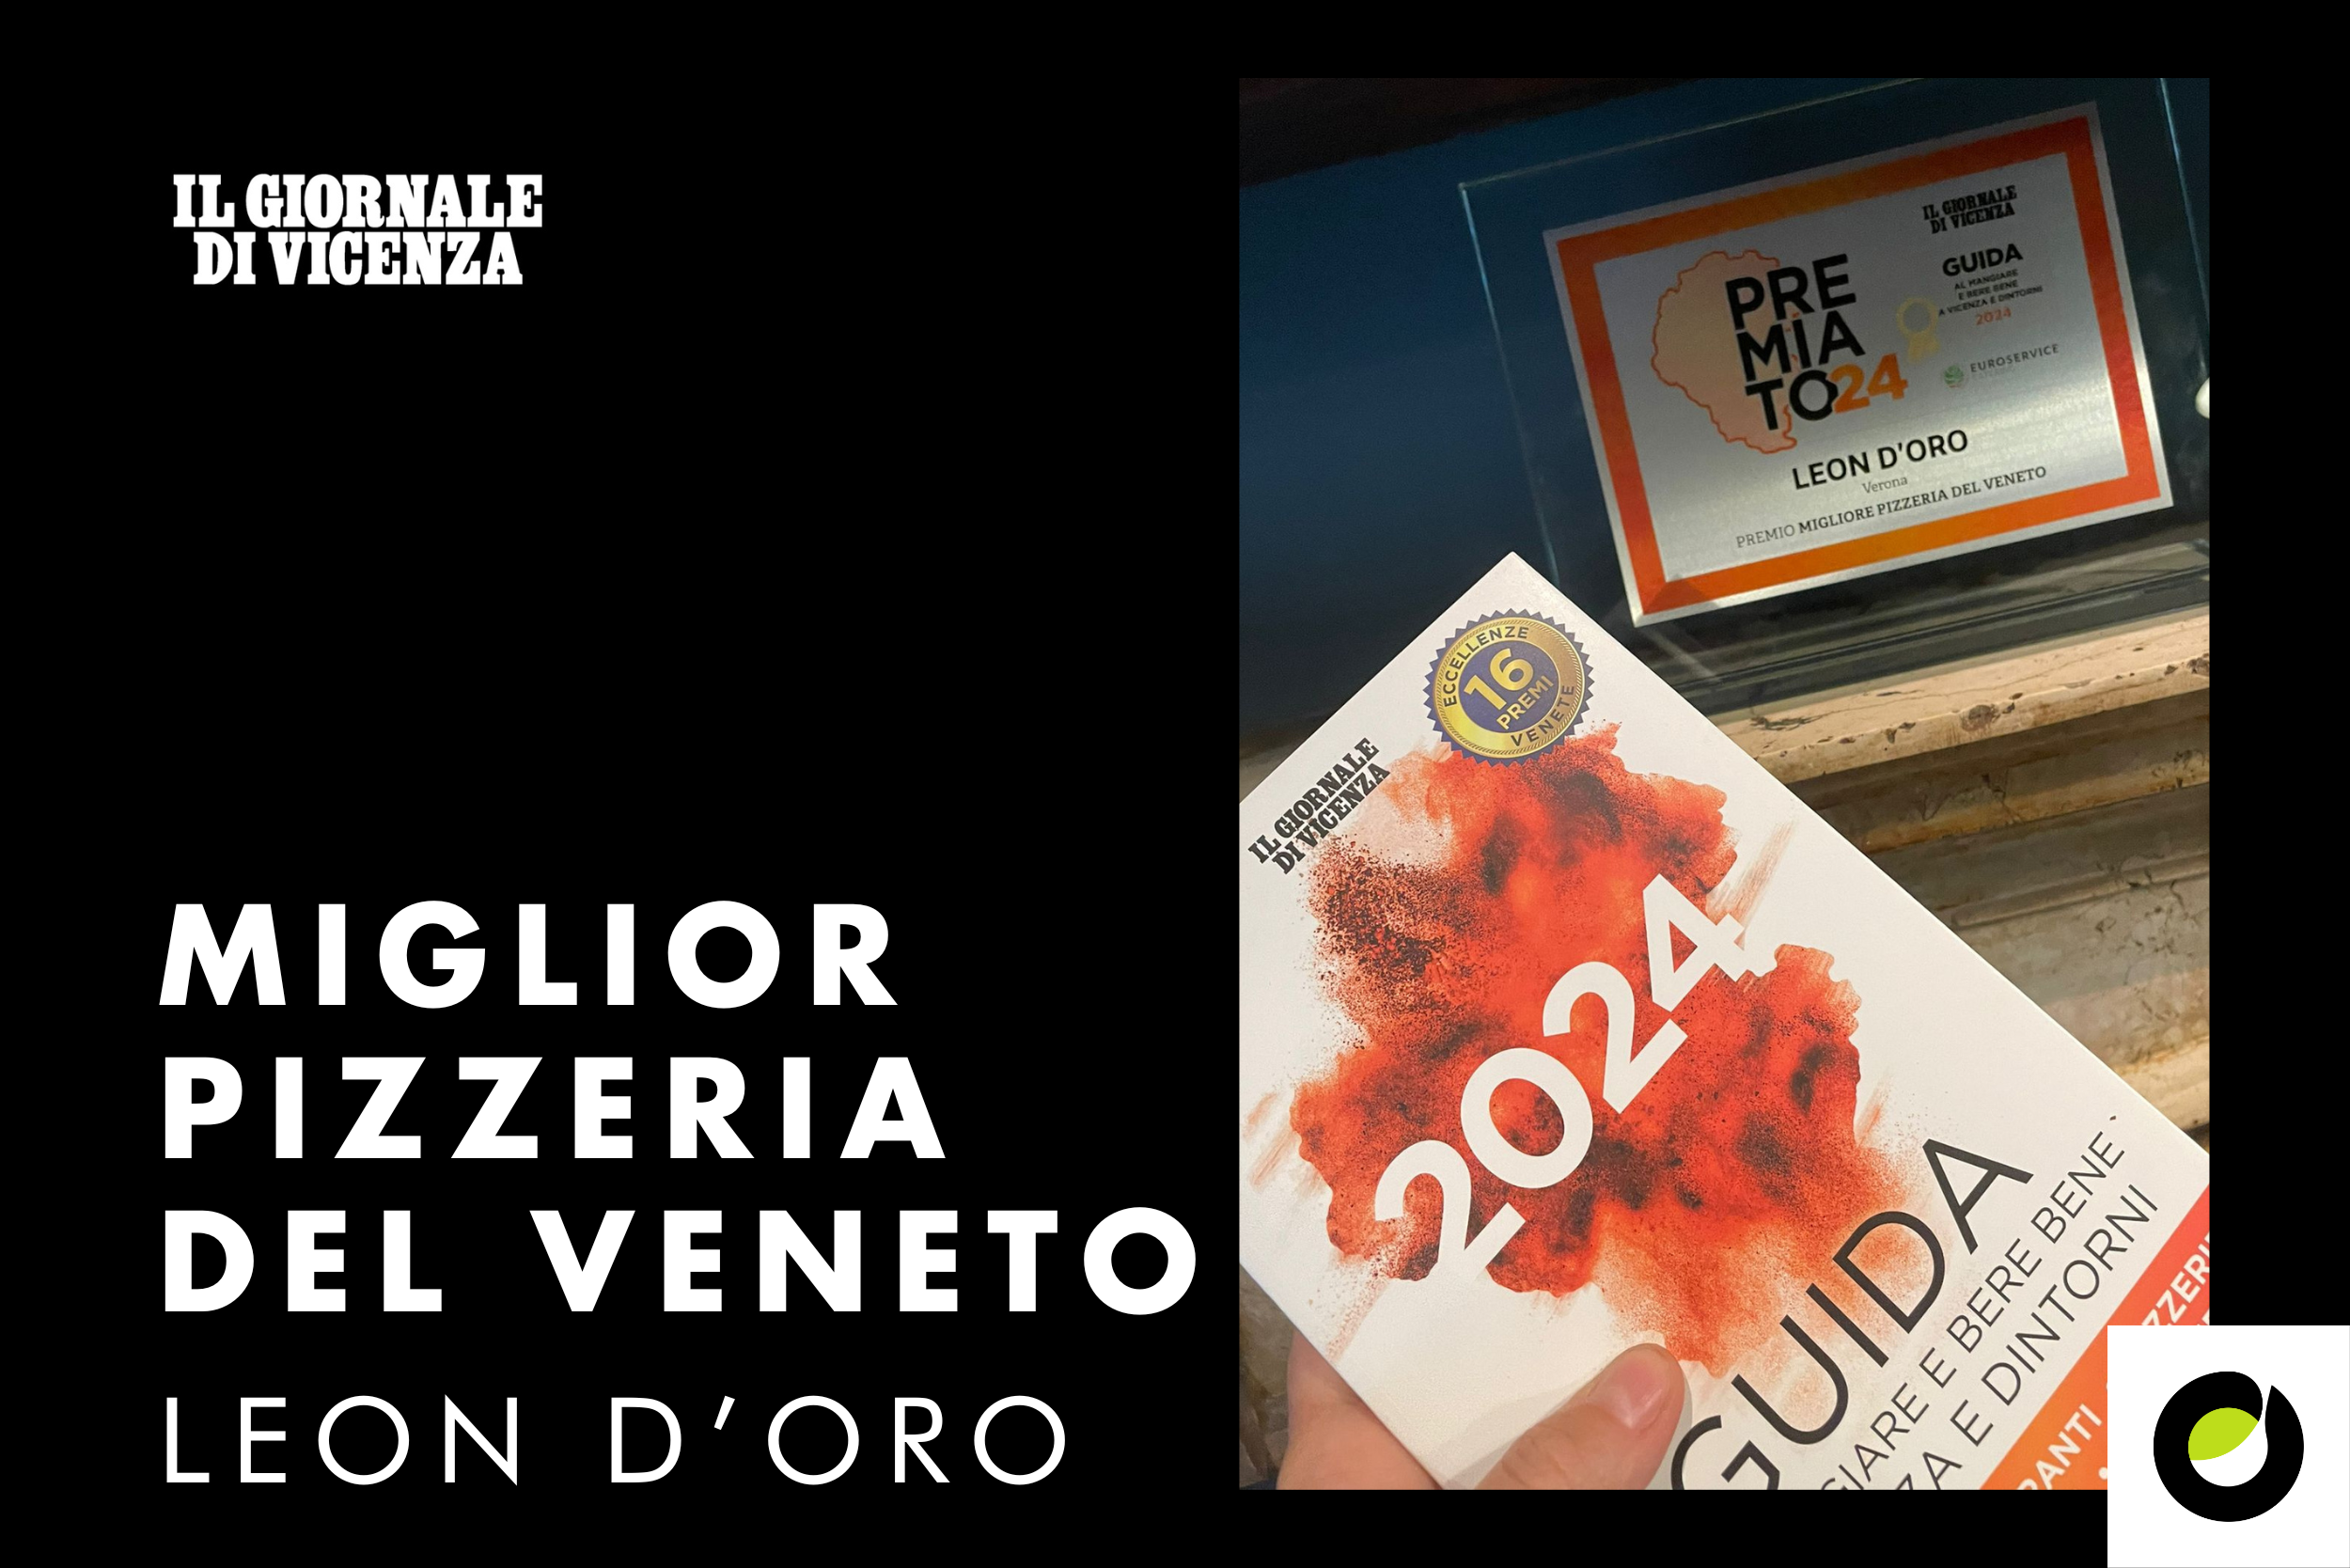 Pizzeria Leon d’Oro: la migliore in Veneto secondo la Guida al mangiare <br>e bere bene a Vicenza e in Veneto.